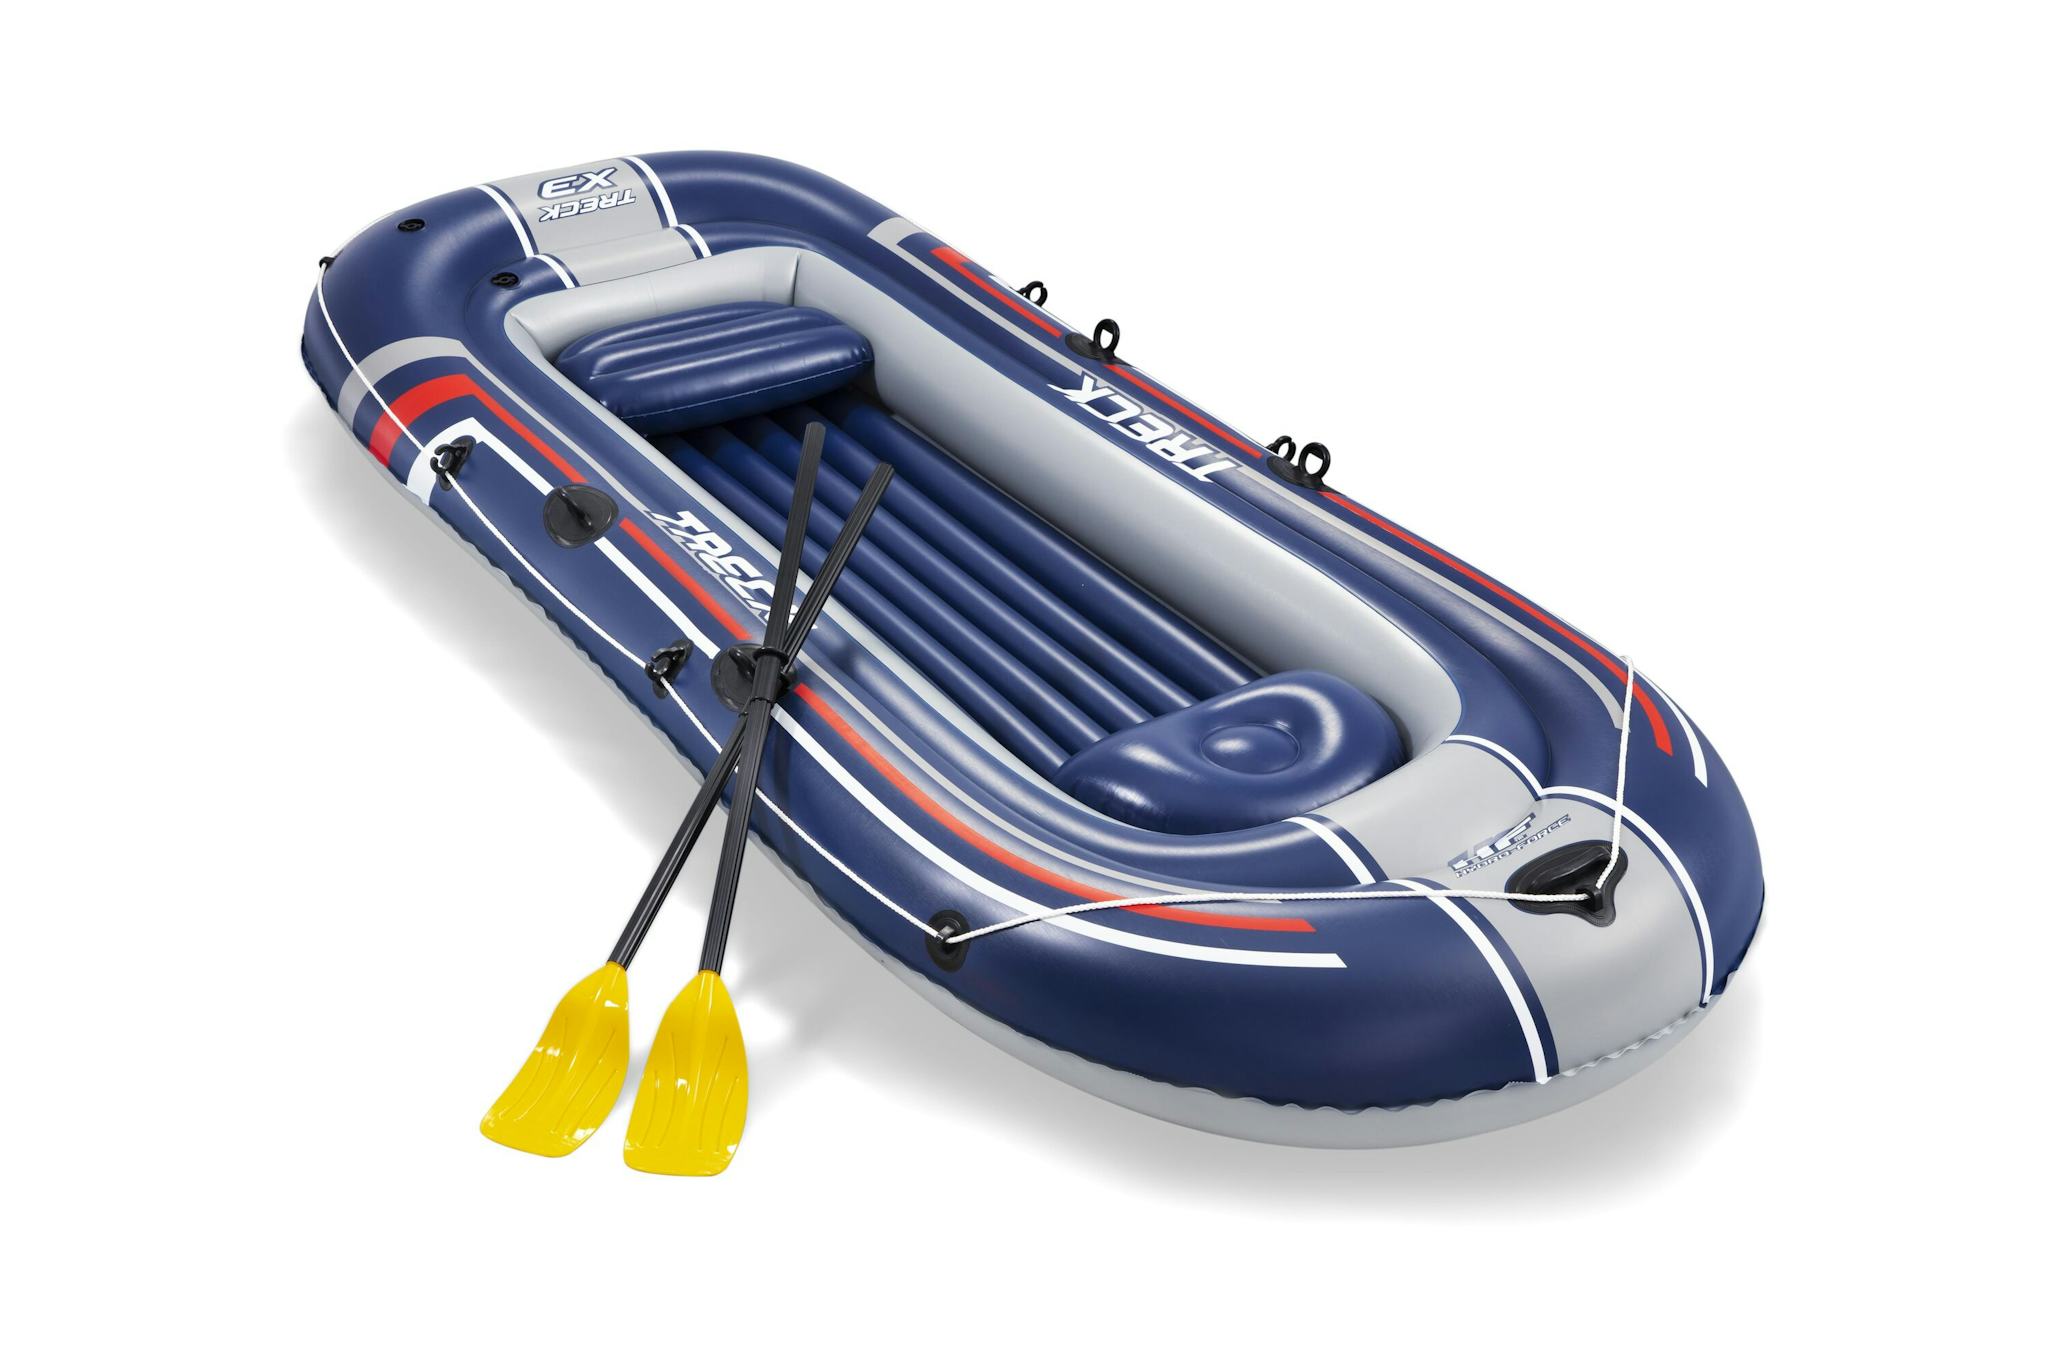 Sports d'eau Bateau gonflable Treck X3 set Hydro-Force™, 307 x 126 cm, 3 adultes et 1 enfant, 2 pagaies et une pompe à pied Bestway 1